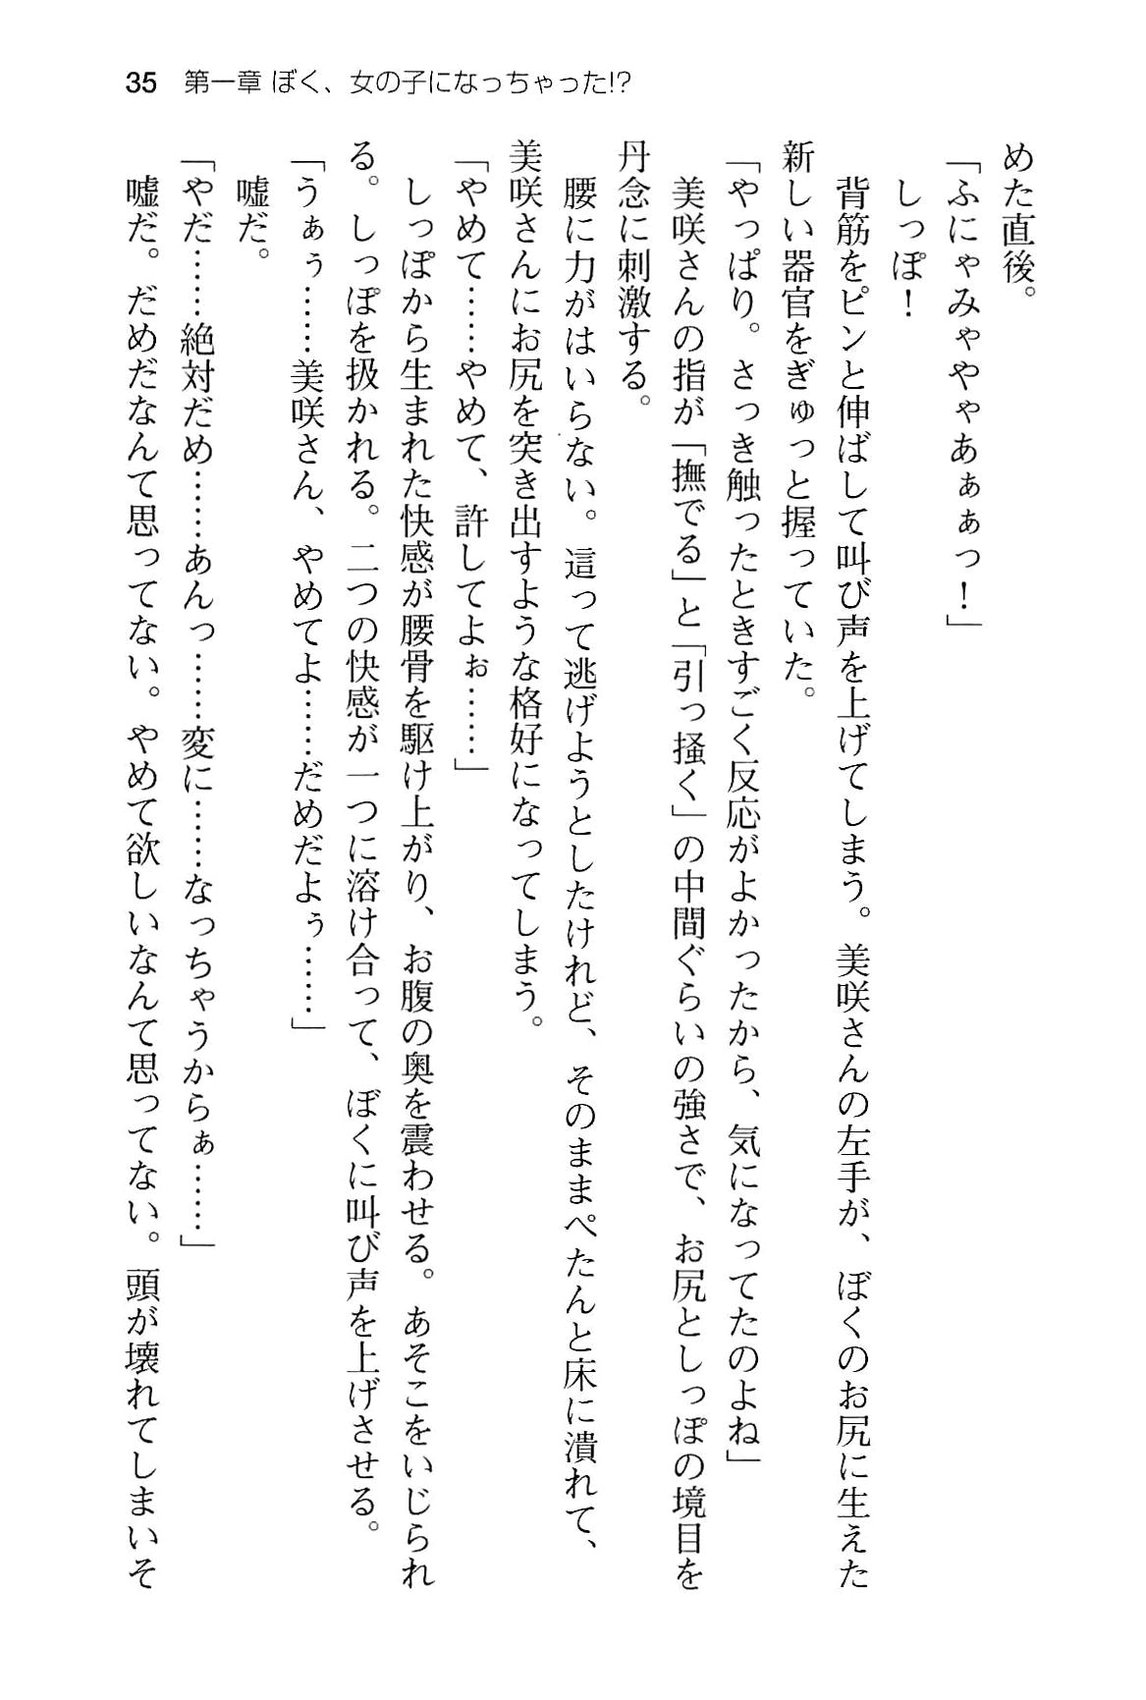 [Ebinuma Minami × Akino Shin] Boku no Shippo wo Semenaide! (官能小説・エロライトノベル) [蝦沼ミナミ×あきのしん] ぼくのしっぽをせめないでっ! (ぷちぱら文庫Creative 11) (2012-6-22)